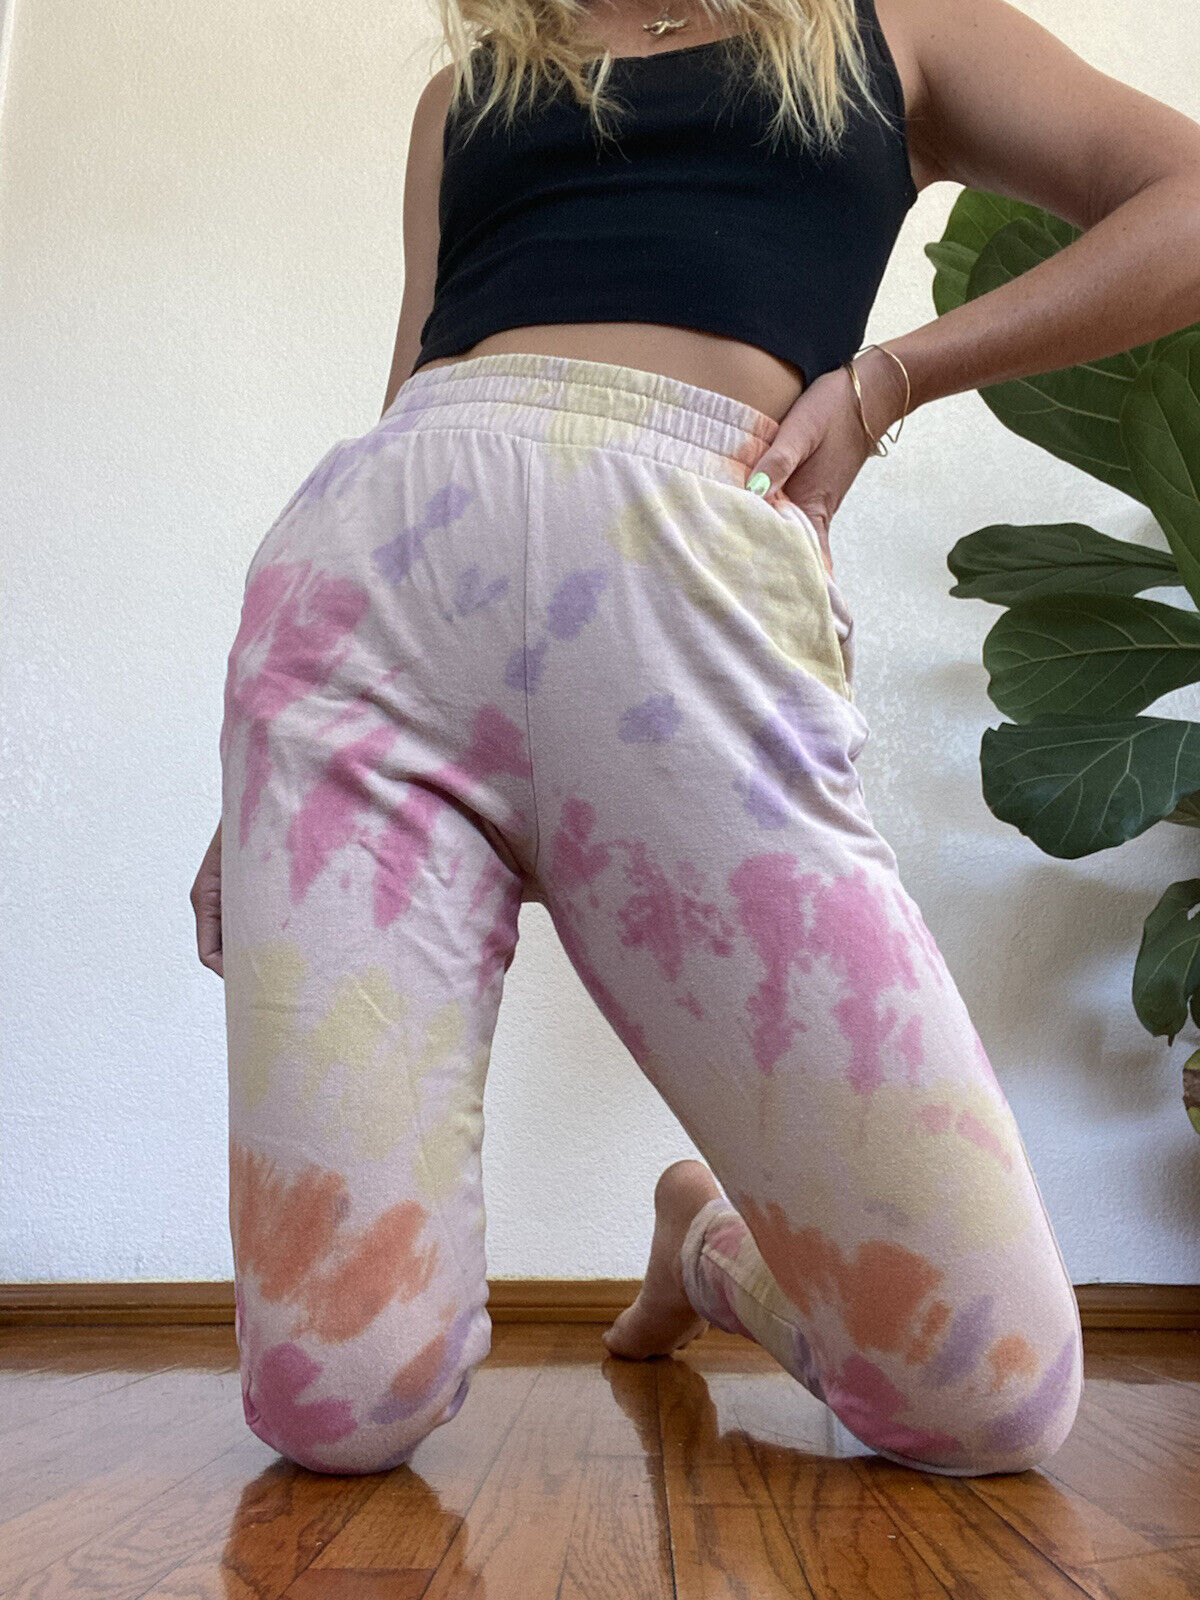 Pastel Tie Dye Sweatpants - Unbranded - Women’s XS